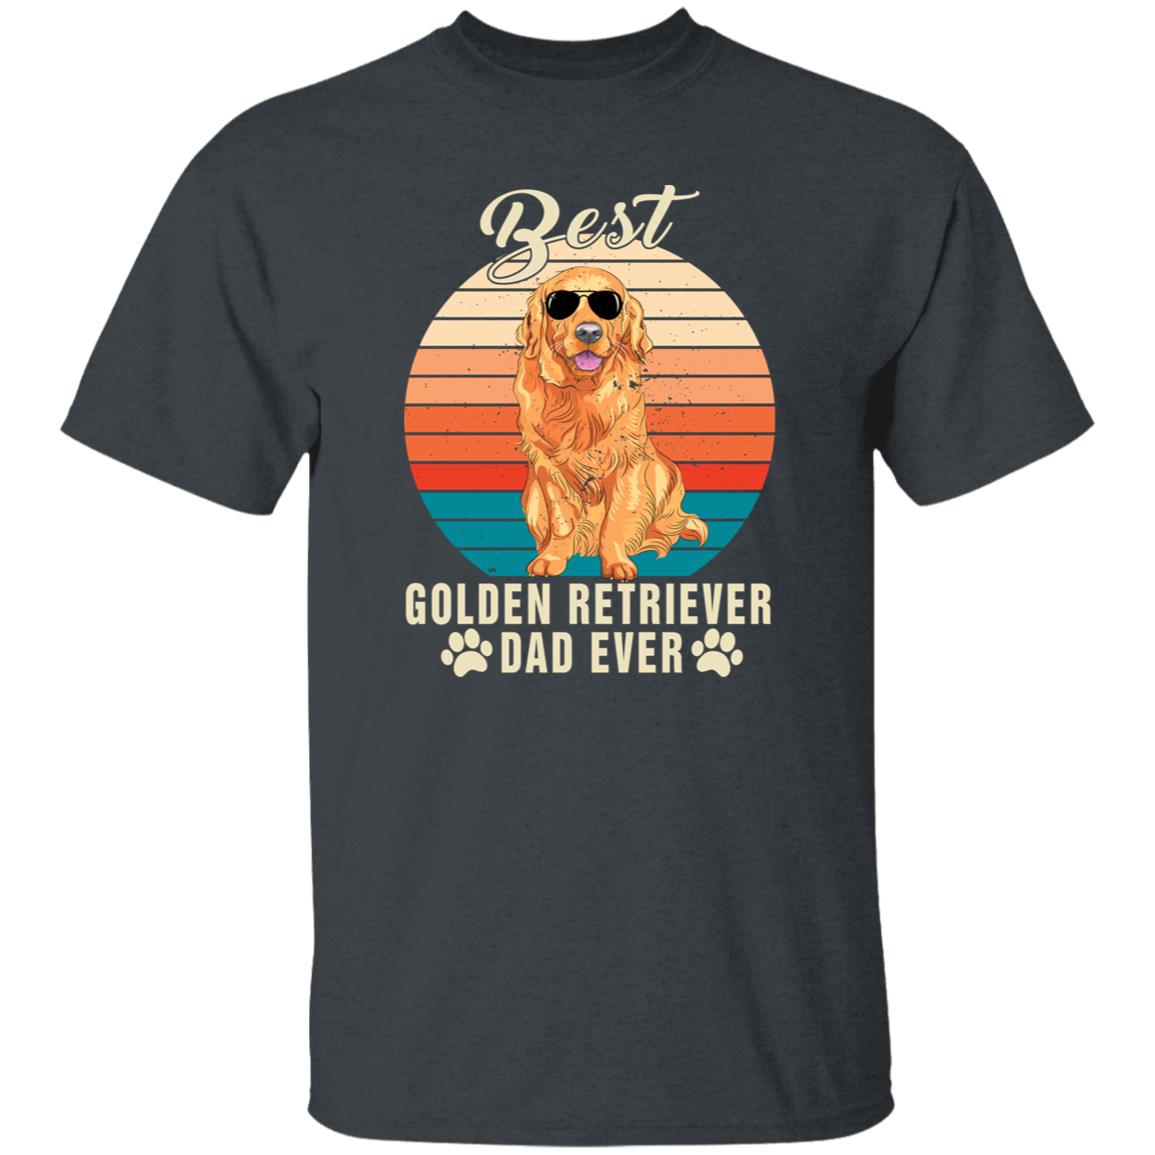 Best golden retriever dad ever Retro Unisex T-shirt gift black dark heather-Dark Heather-Family-Gift-Planet